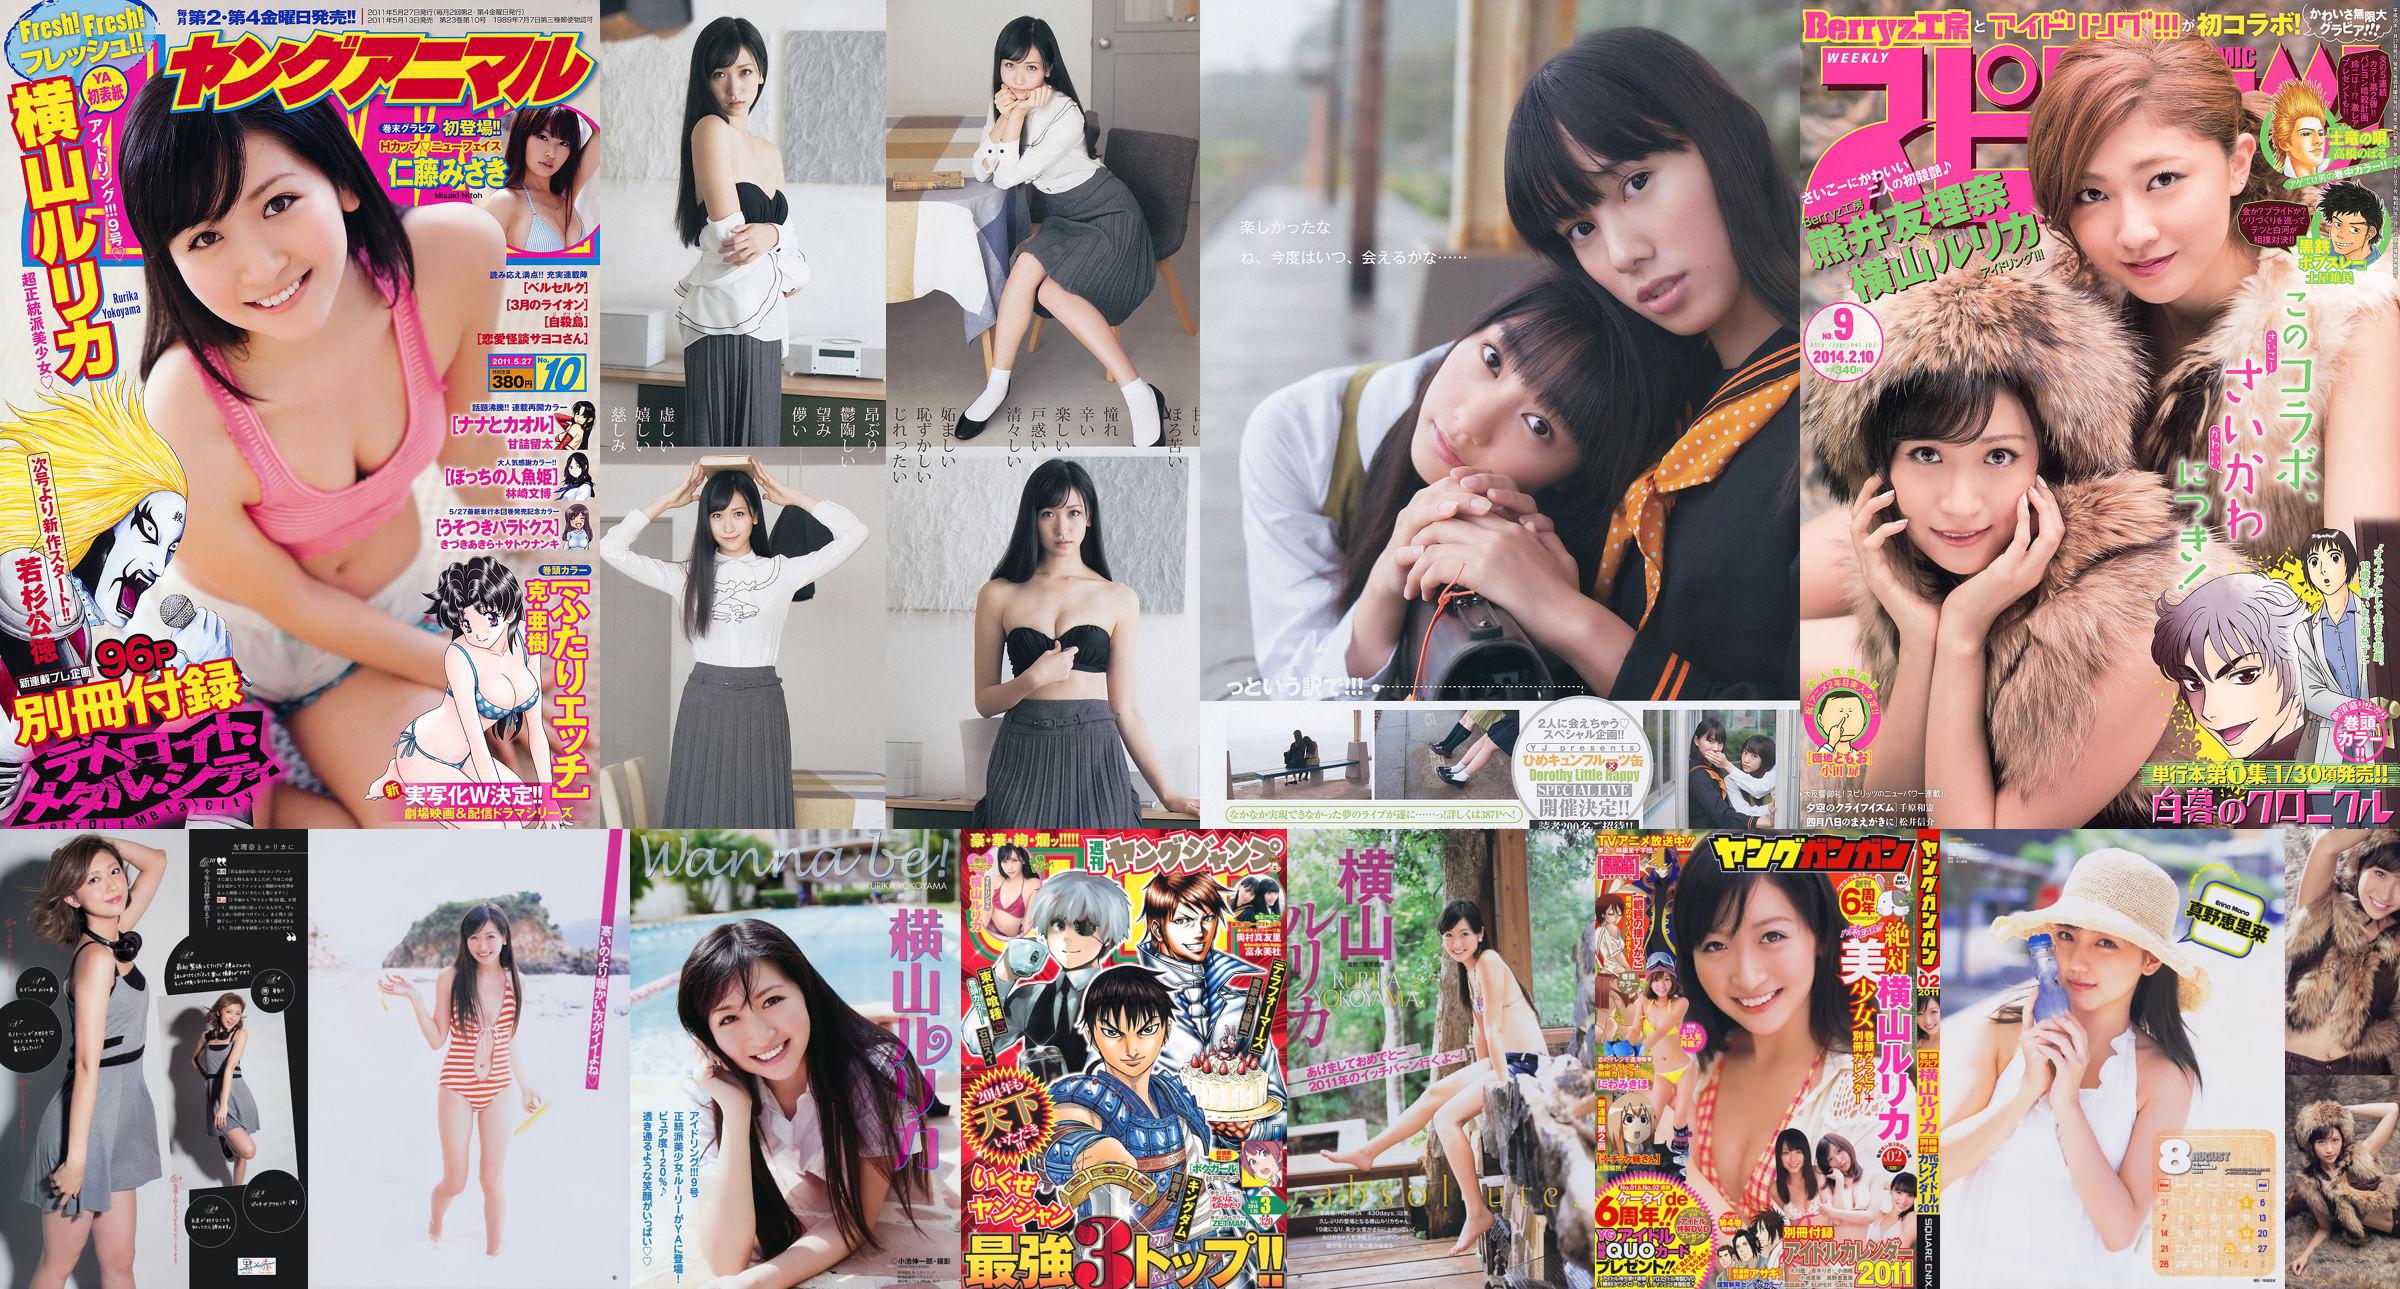 [Weekly Big Comic Spirits] Yokoyama Rurika Kumai Yurina 2014 No.09 Photo Magazine No.425eb0 หน้า 1